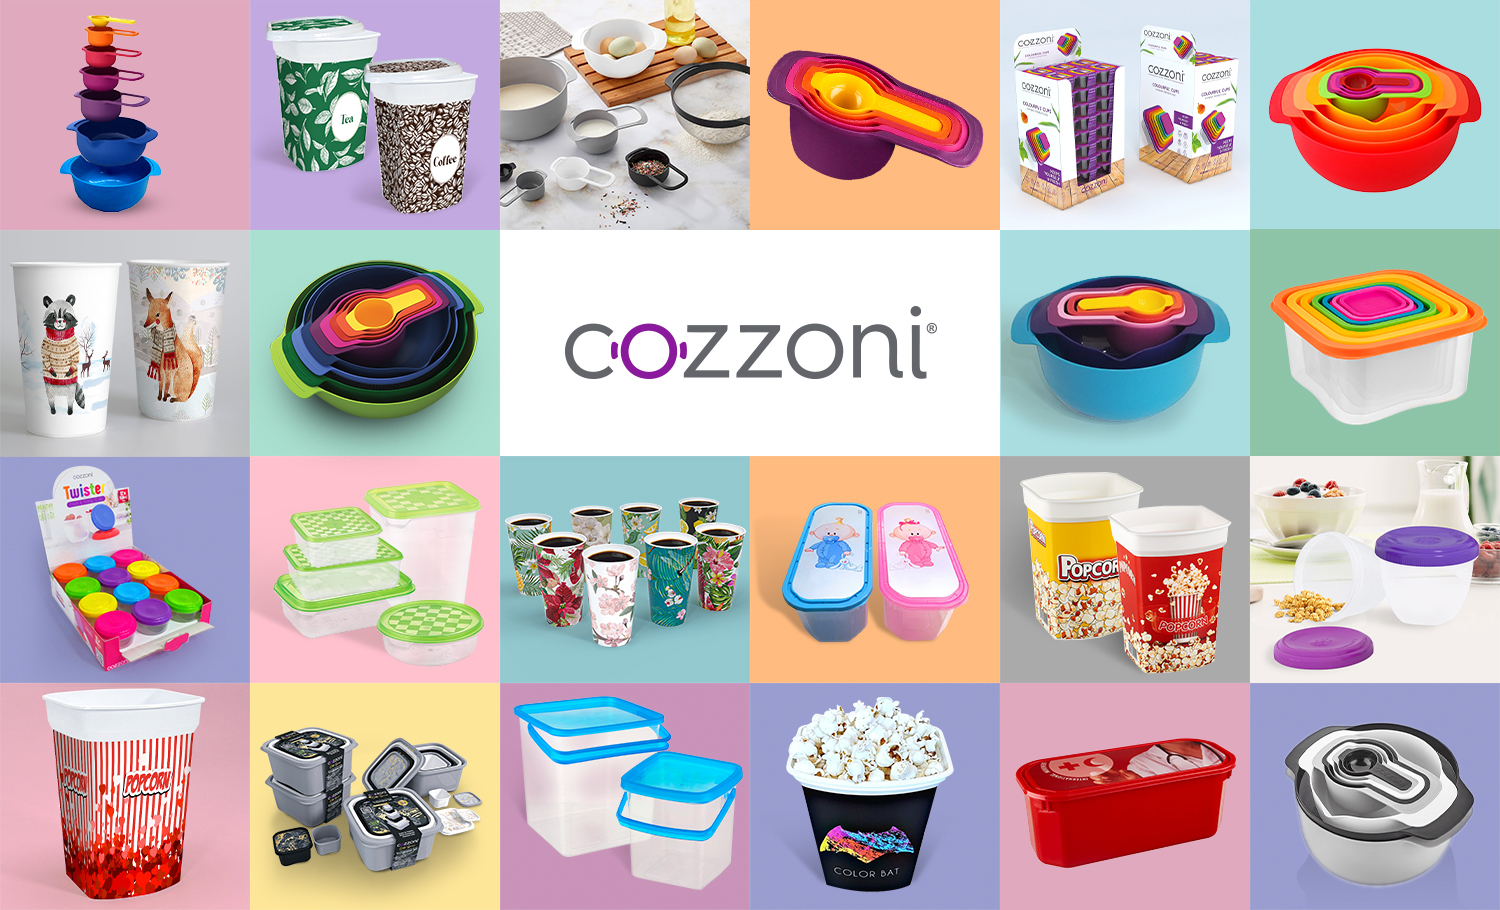 Cozzoni - Product Range